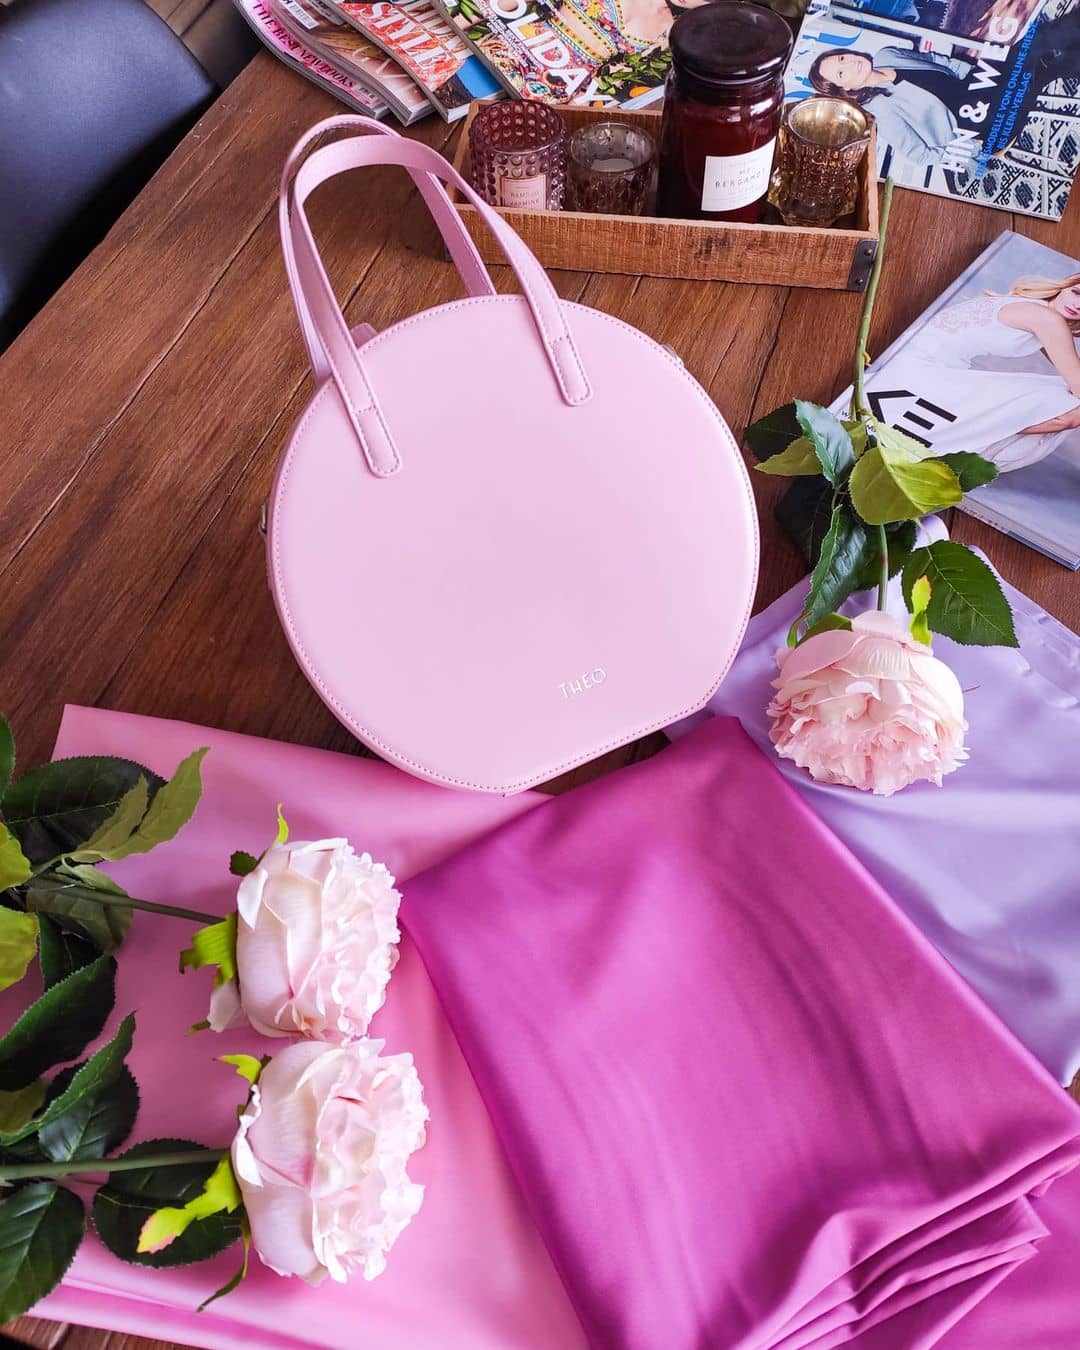 GIULIA Powder Kiss táska, pasztell rózsaszín - THEO Budapest Webshop -  Prémium minőségű, egyedi tervezésű bőrtáskák és kiegészítők